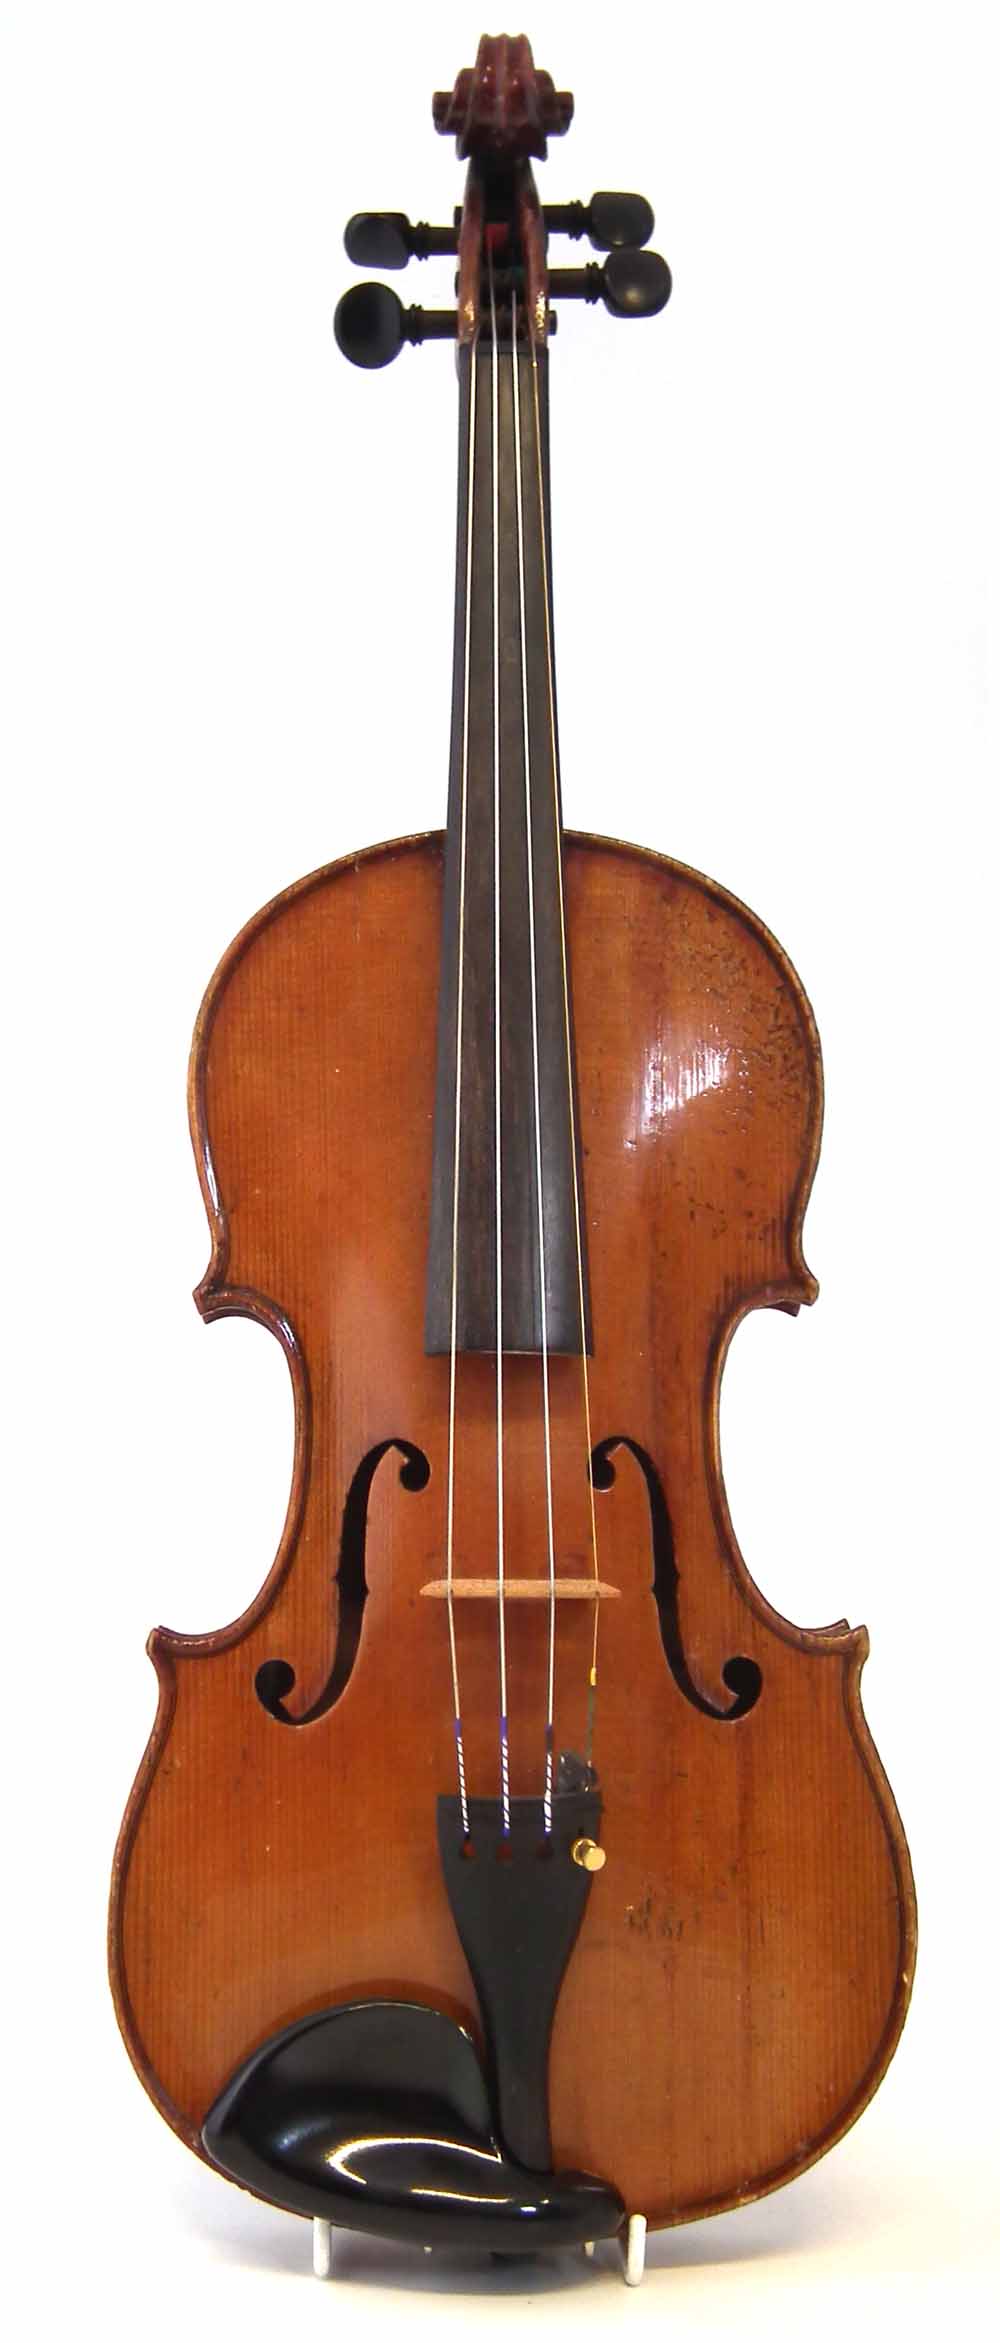 Violin by Collin Mezin labelled 'Ch. J.B. Collin Mezin, Luthier, 1924, Grand Prix - Exposition